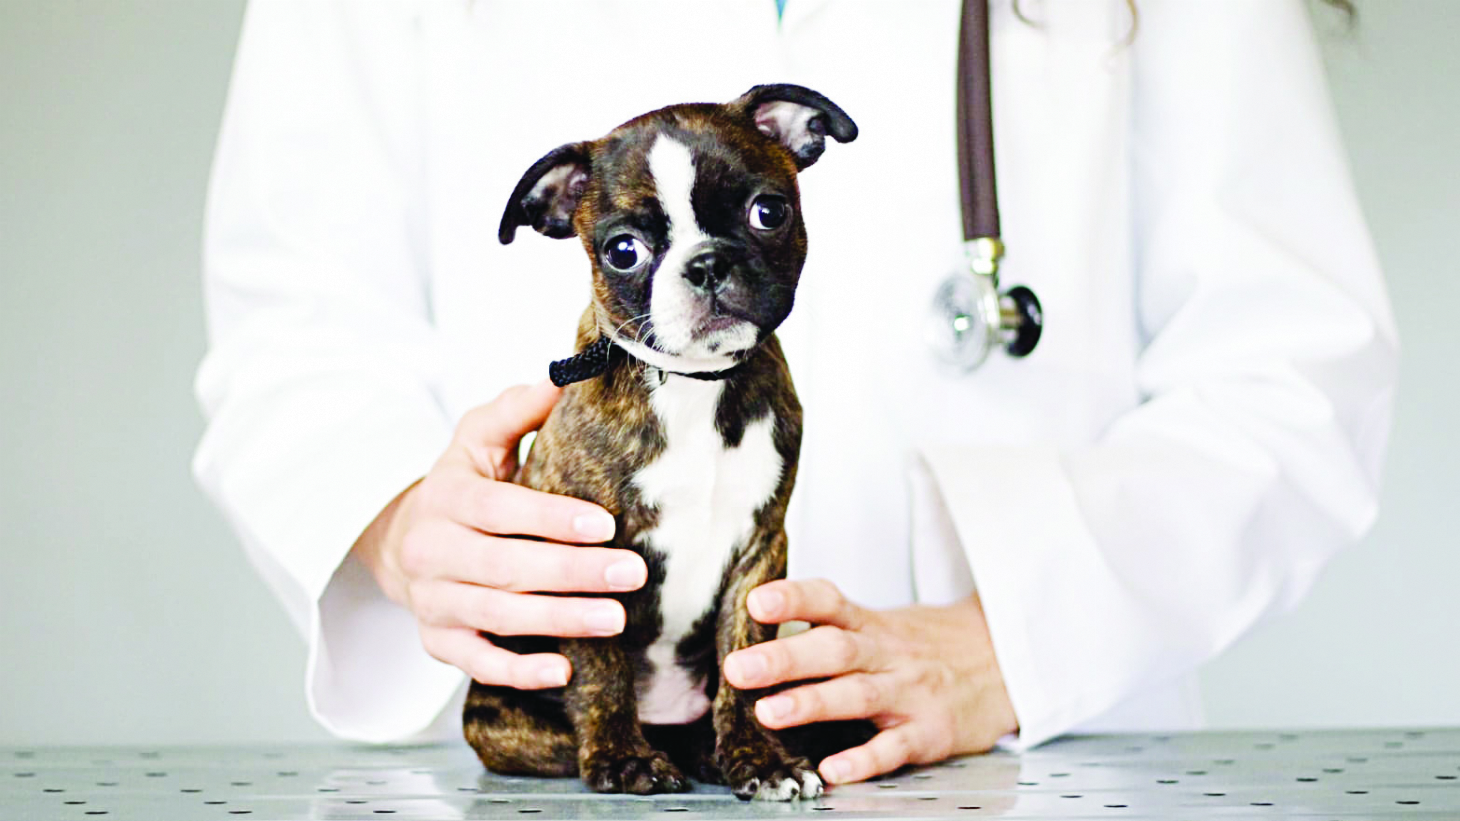 Medicina preventiva pode salvar a vida do pet | Jornal da Orla